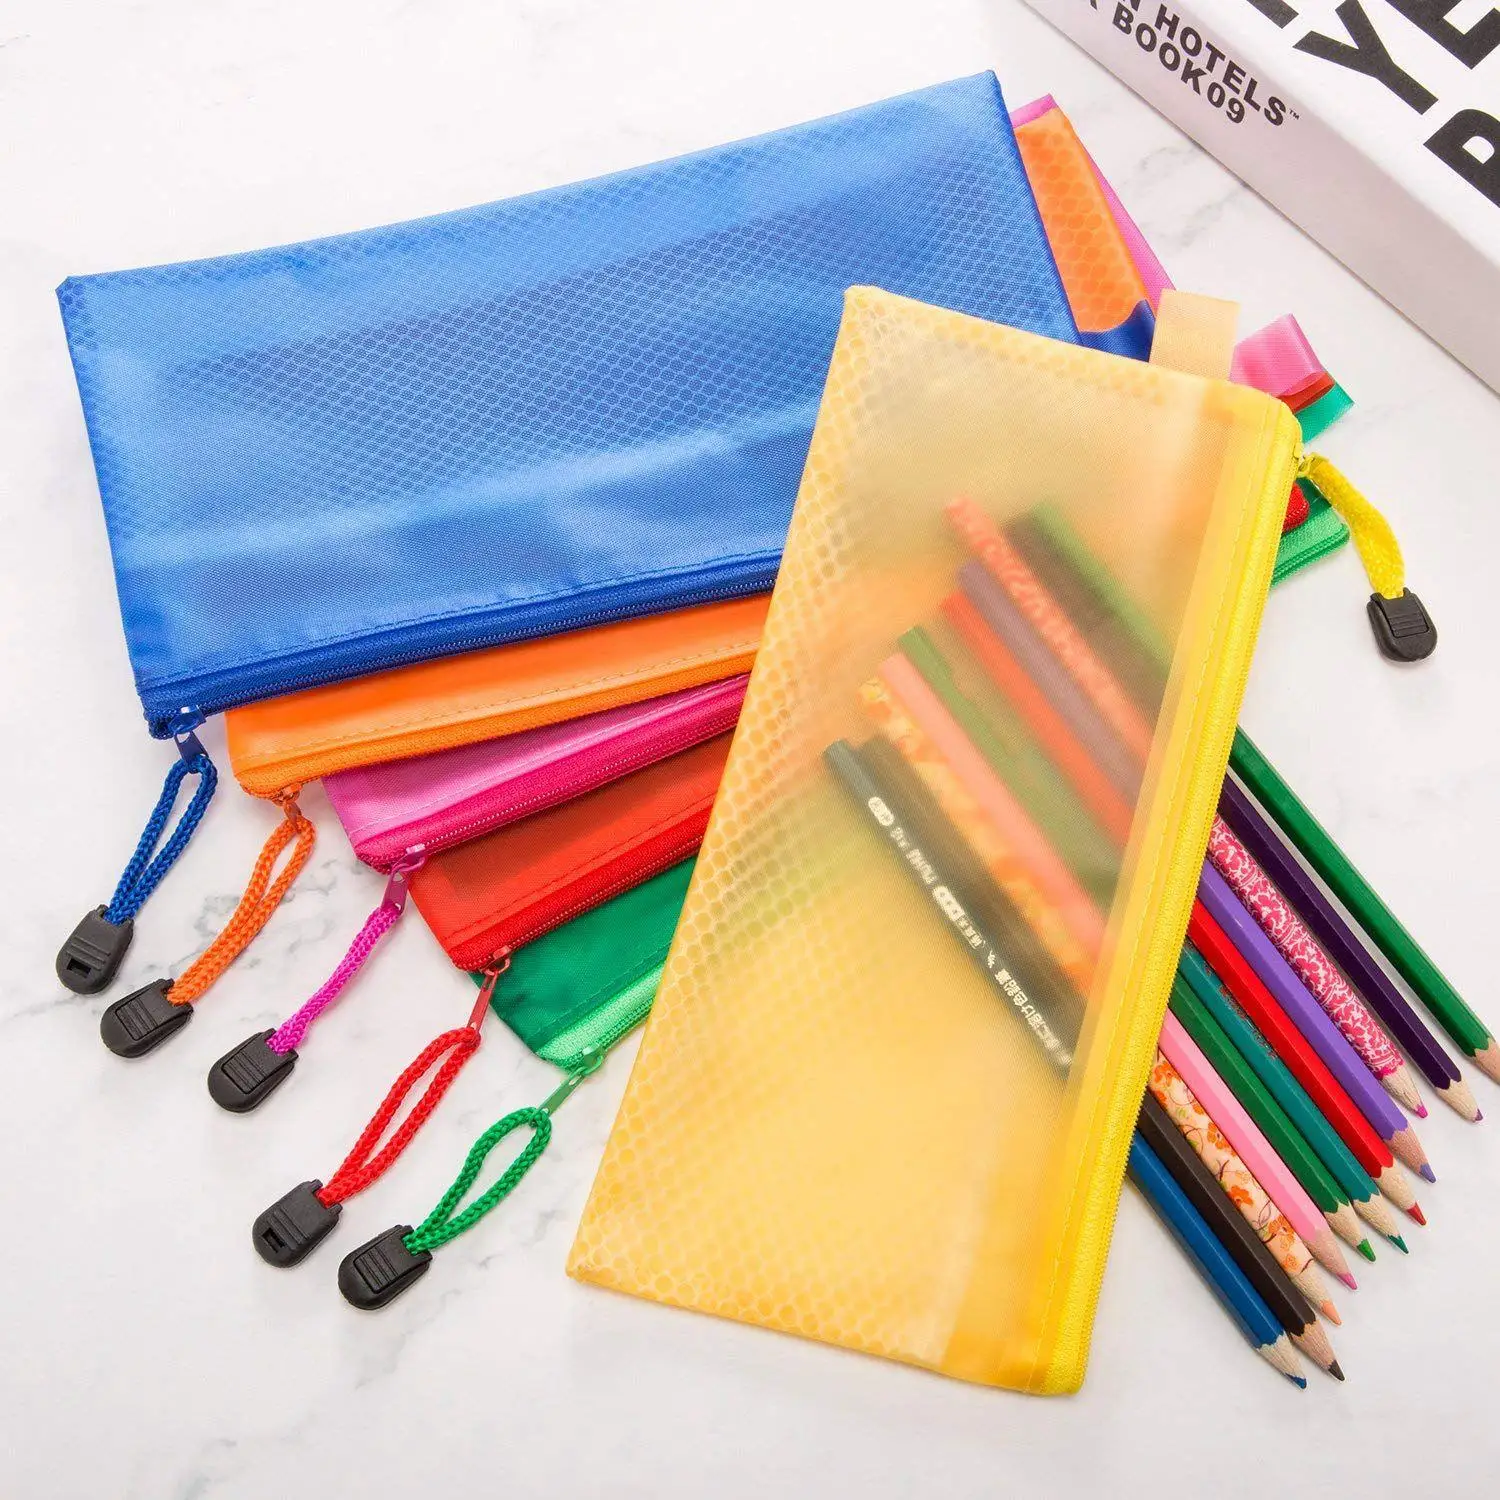 Горячая-12 шт. 6 цветной карандаш сумка на молнии сумки для файлов водостойкий двойной слой для ручки сумка Косметика принадлежности